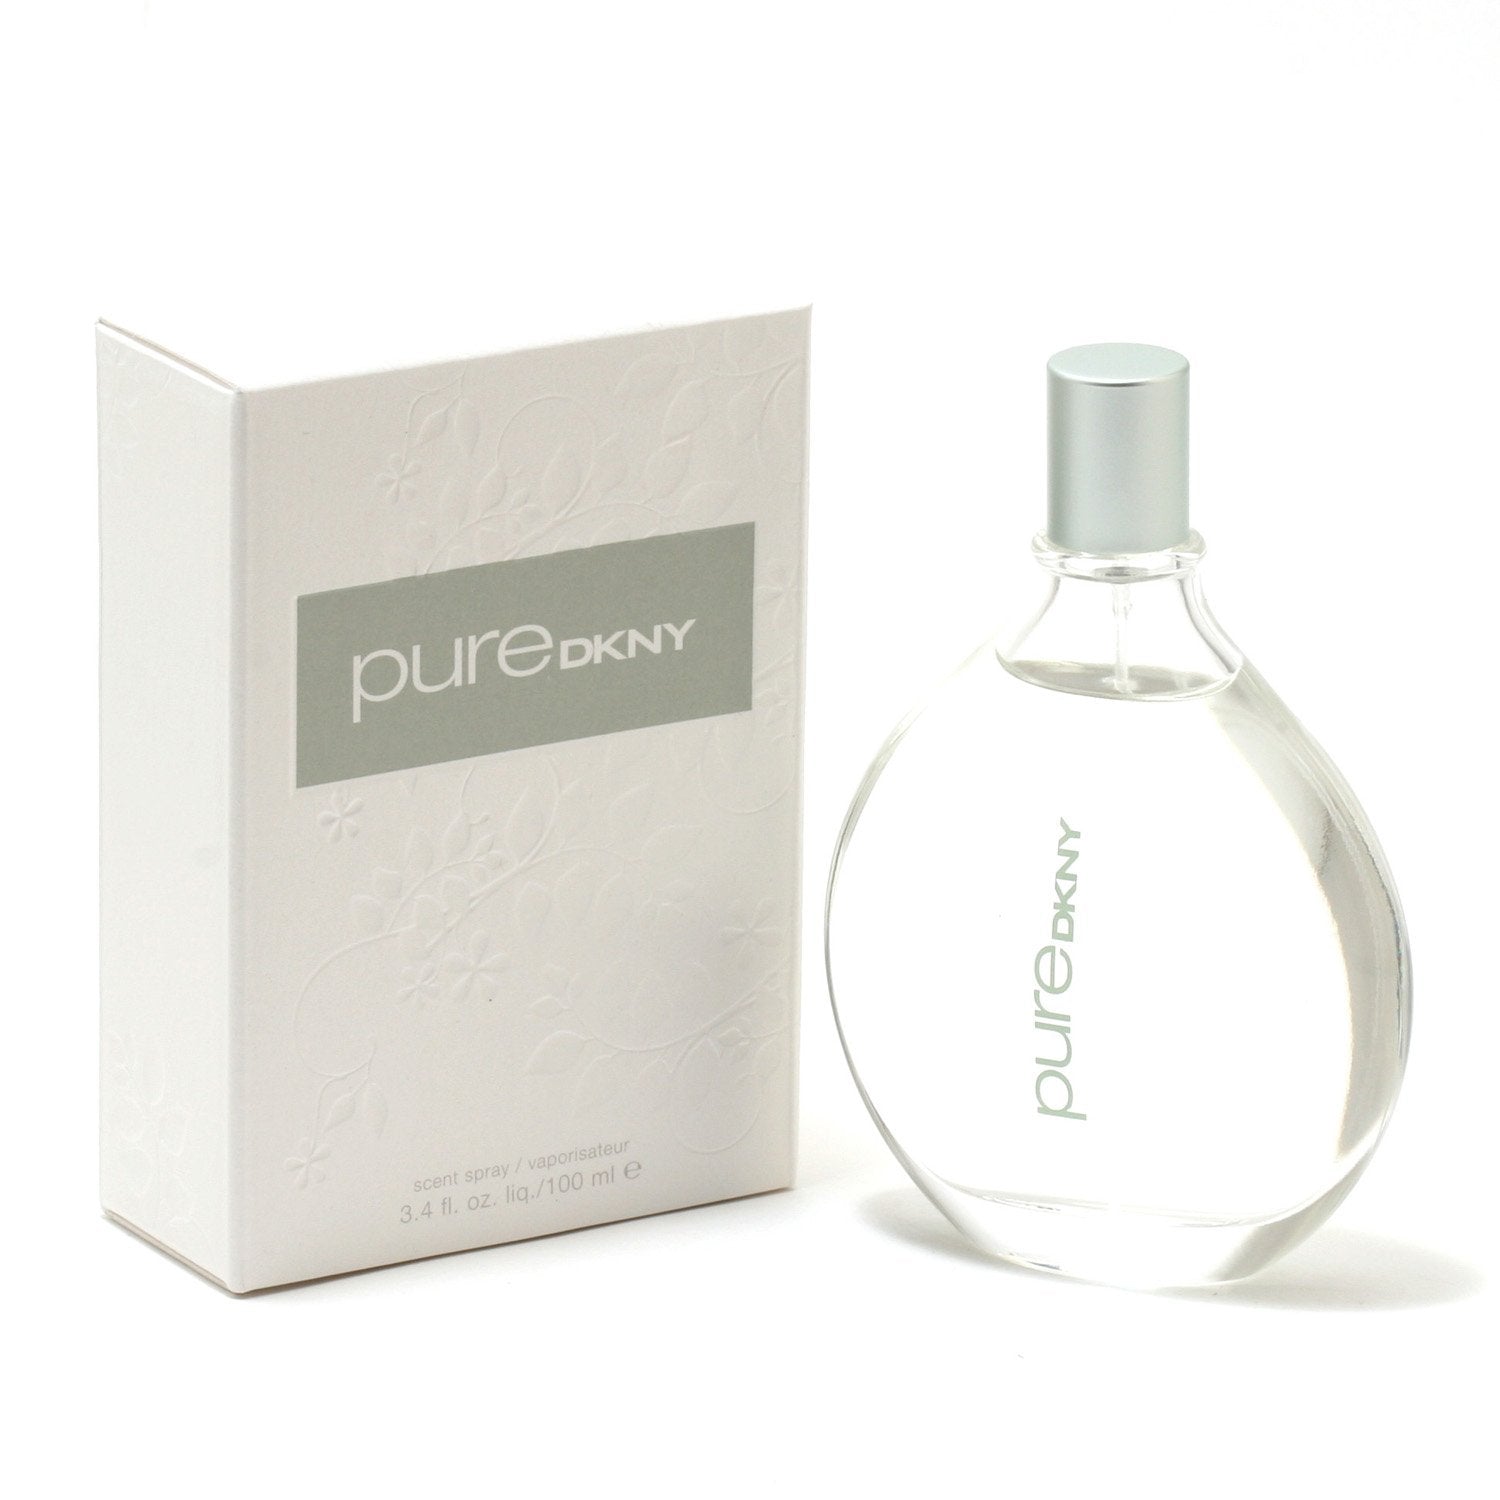 Perfume - PURE DKNY VERBENA FOR WOMEN BY DONNA KARAN - EAU DE PARFUM SPRAY, 3.4 OZ